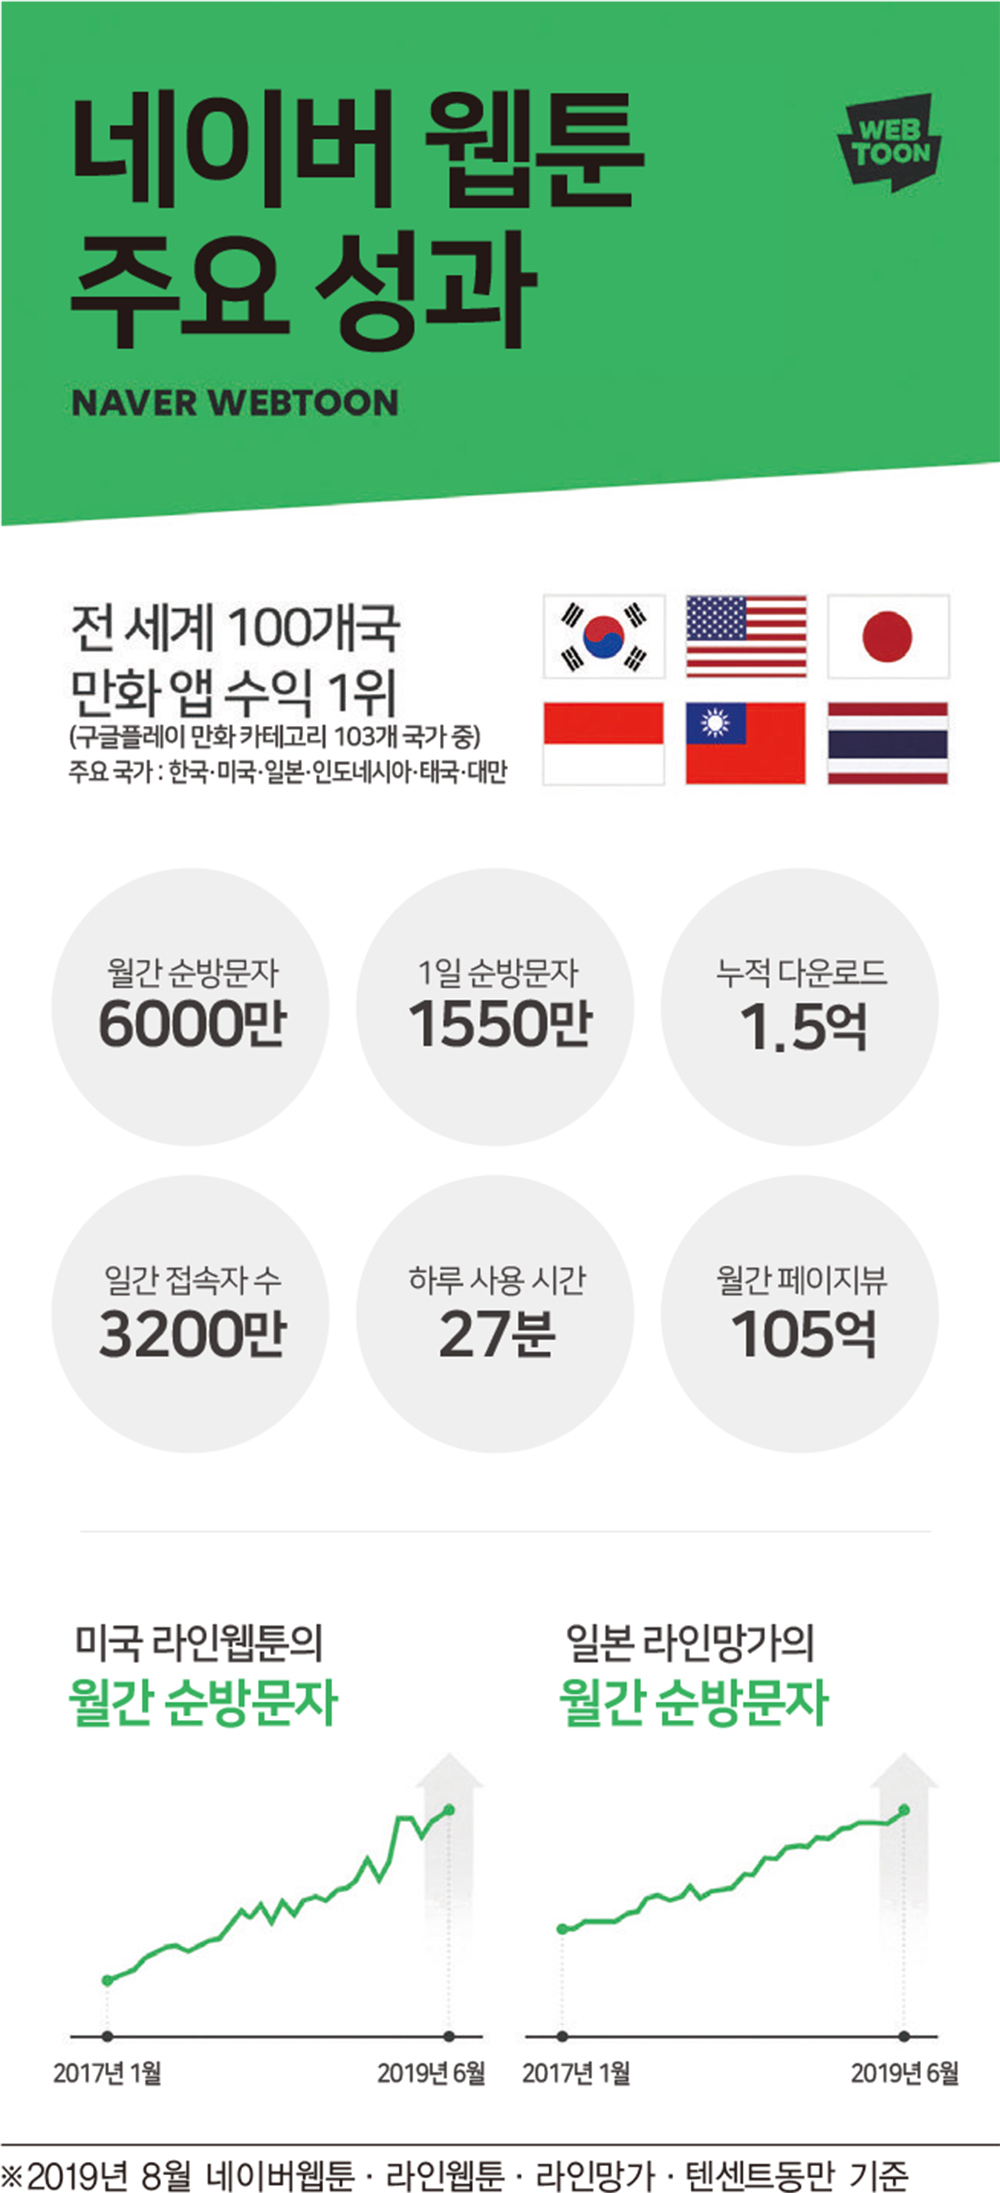 마블 넘보는 ‘한국 웹툰’, 4가지 성공 포인트